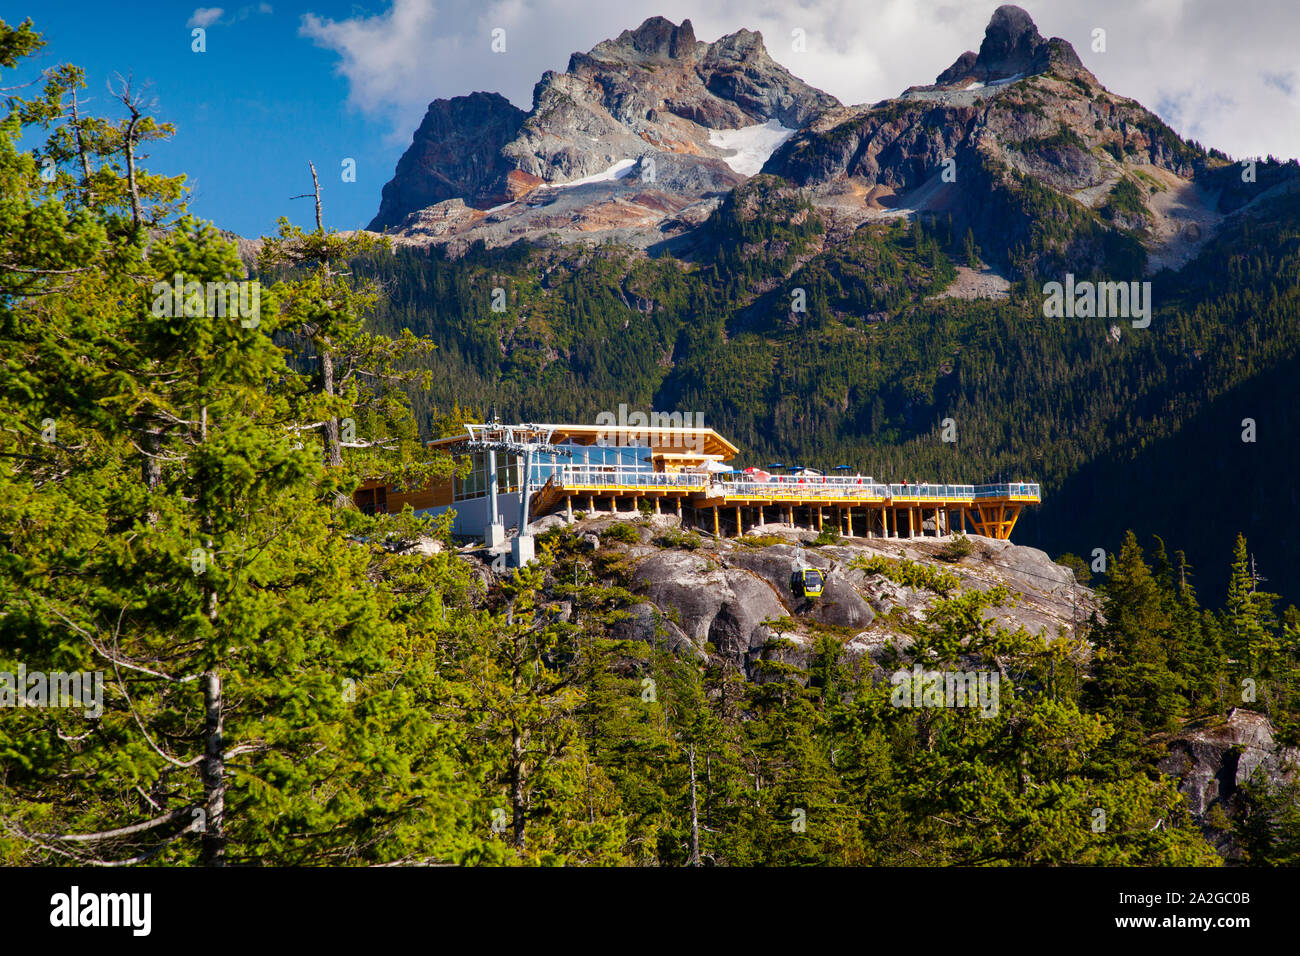 L'hôtel summit lodge de la gondole avec Sky Pilot montagne qui pèse sur elle, Squamish, BC. Banque D'Images